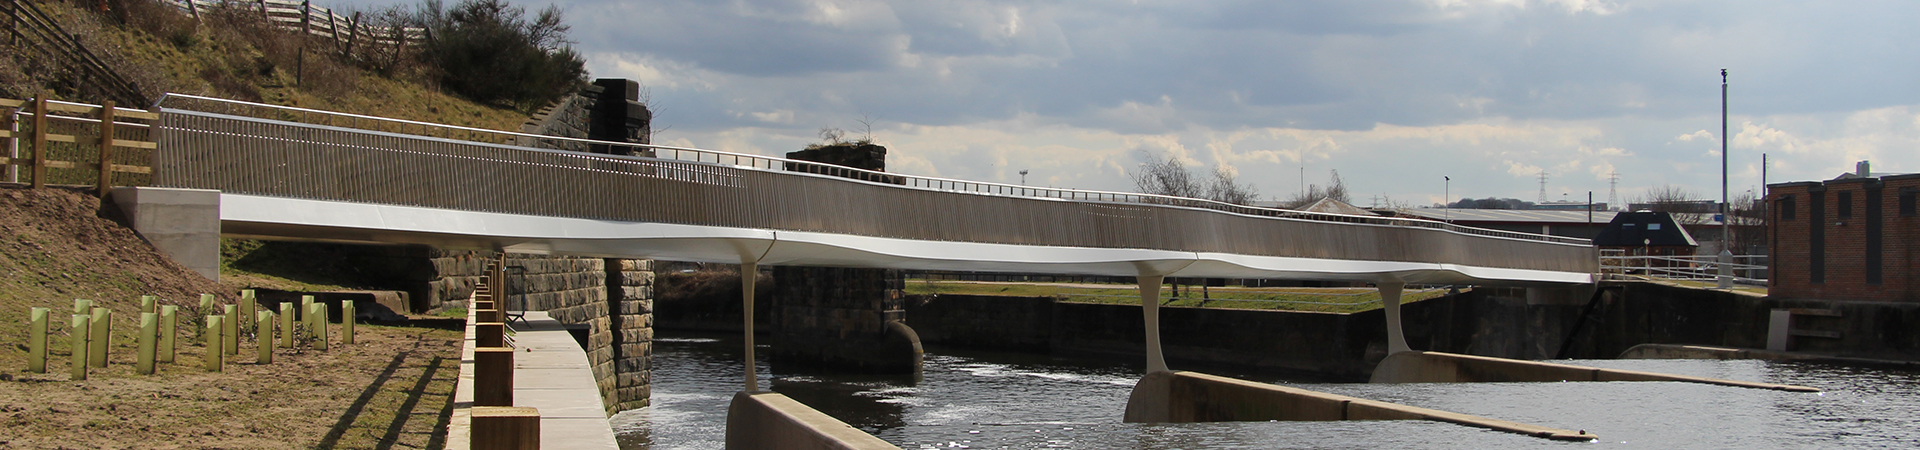 Steel footbridge over water